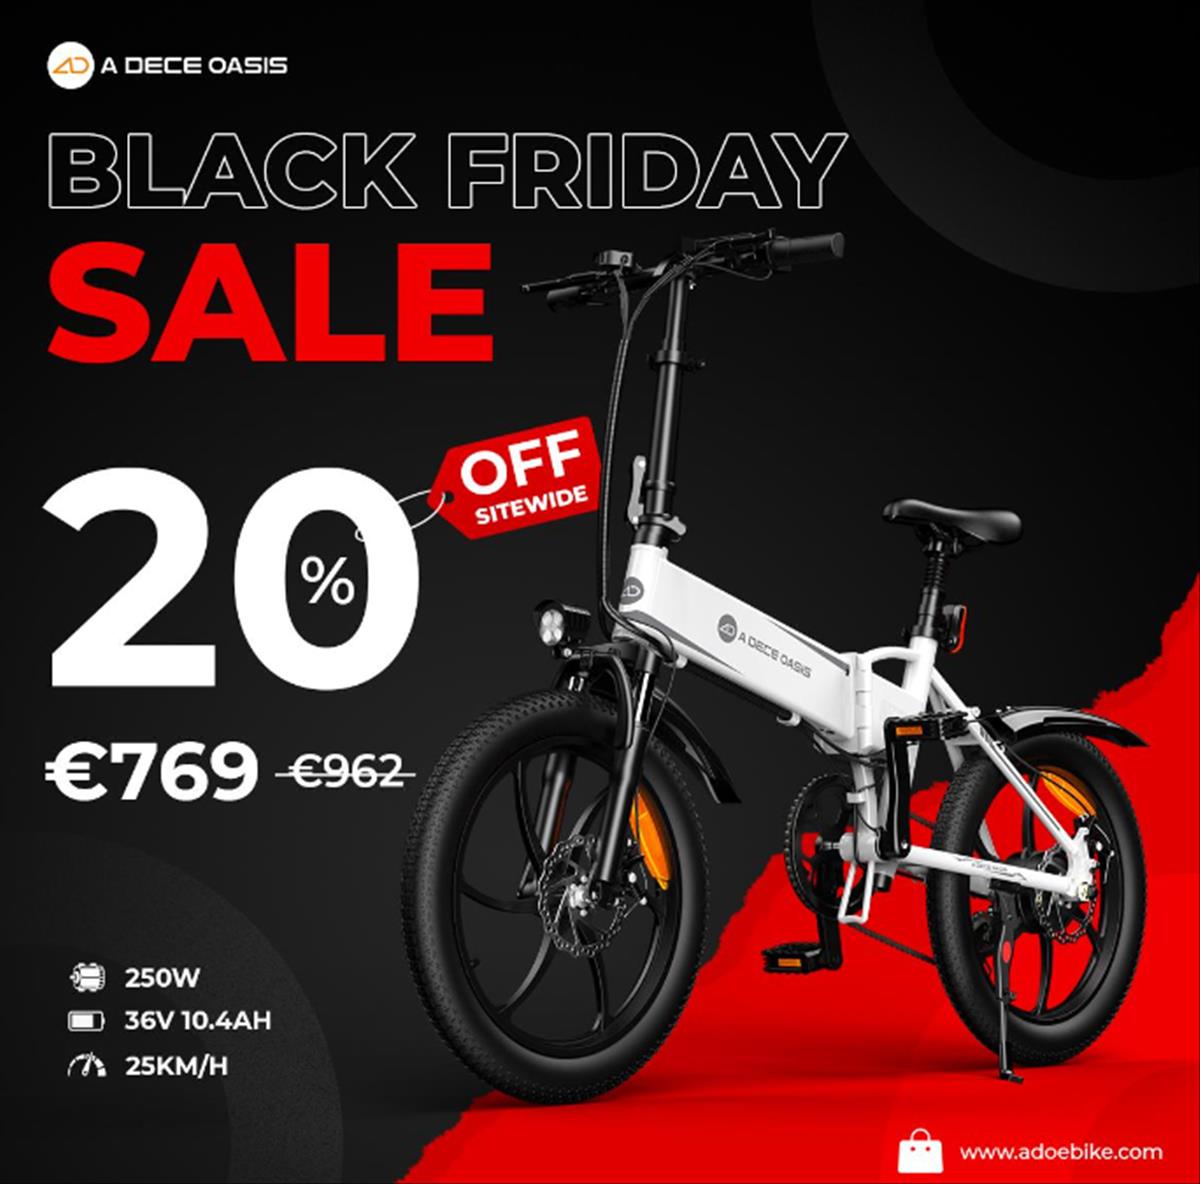 Pegajoso mucho Predicar Estas son las ofertas de ADO Bikes para Black Friday, bicicletas eléctricas  a buen precio